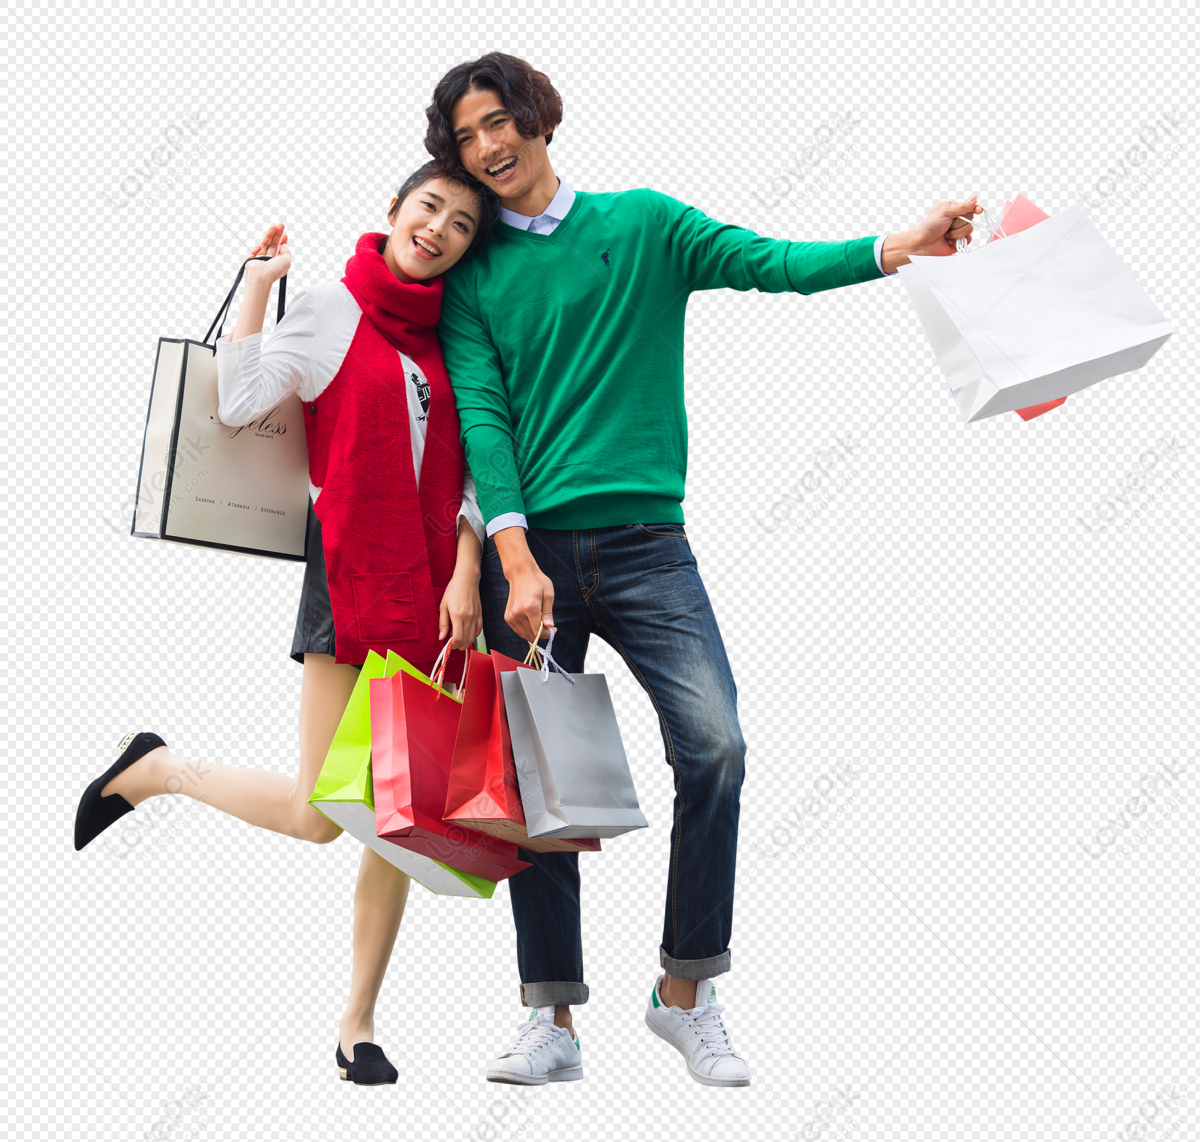 Shopping is fun. Семья с покупками. Веселые люди с покупками. Девушка с покупками. Одежда для всей семьи.